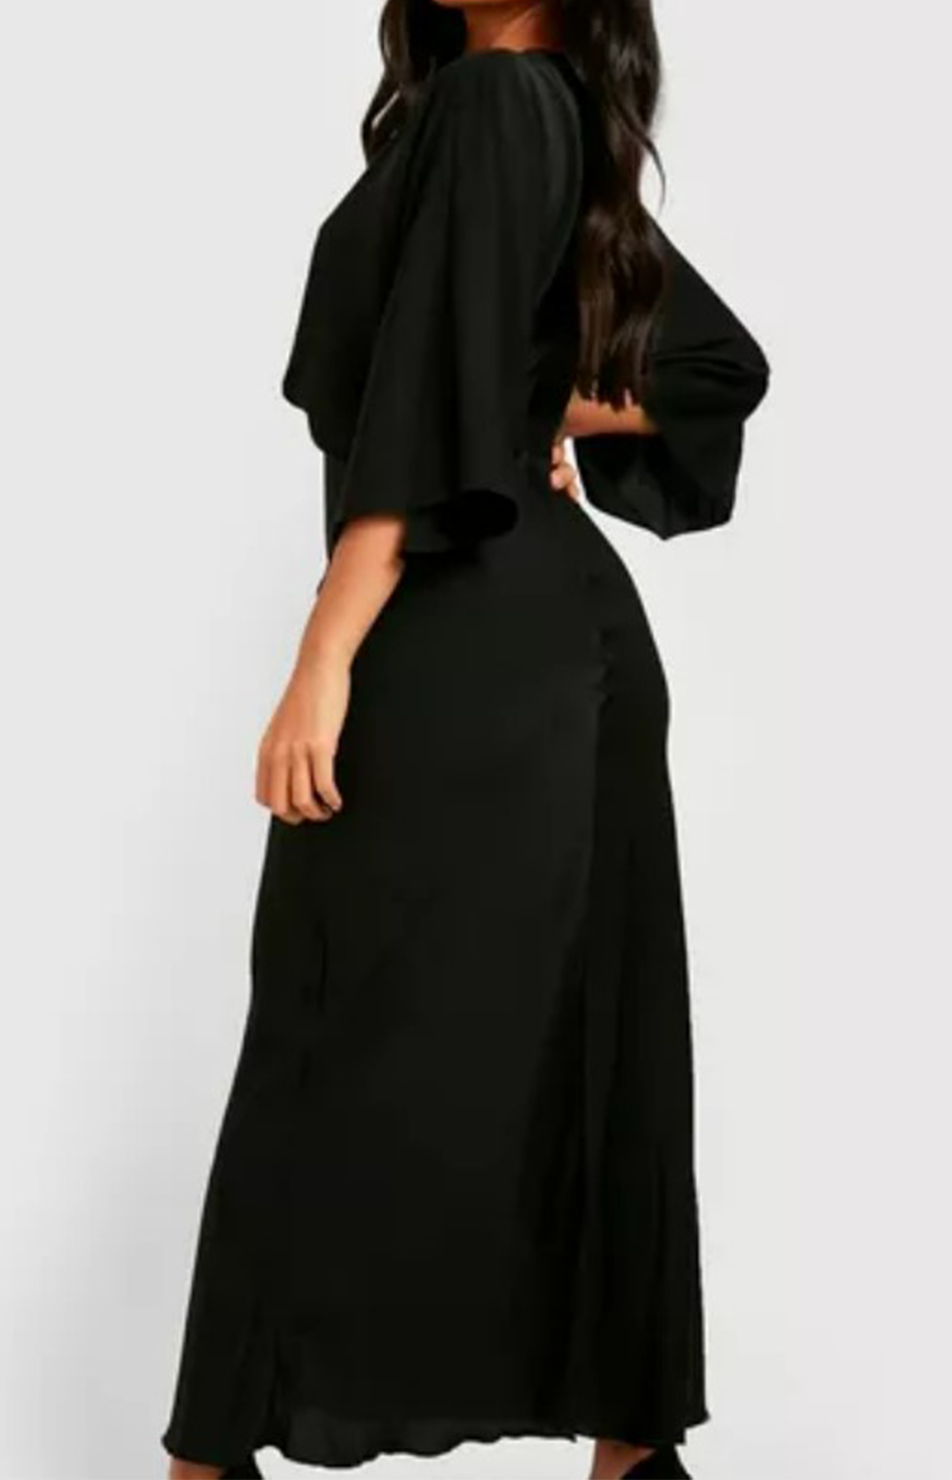 Swanky Black Dress